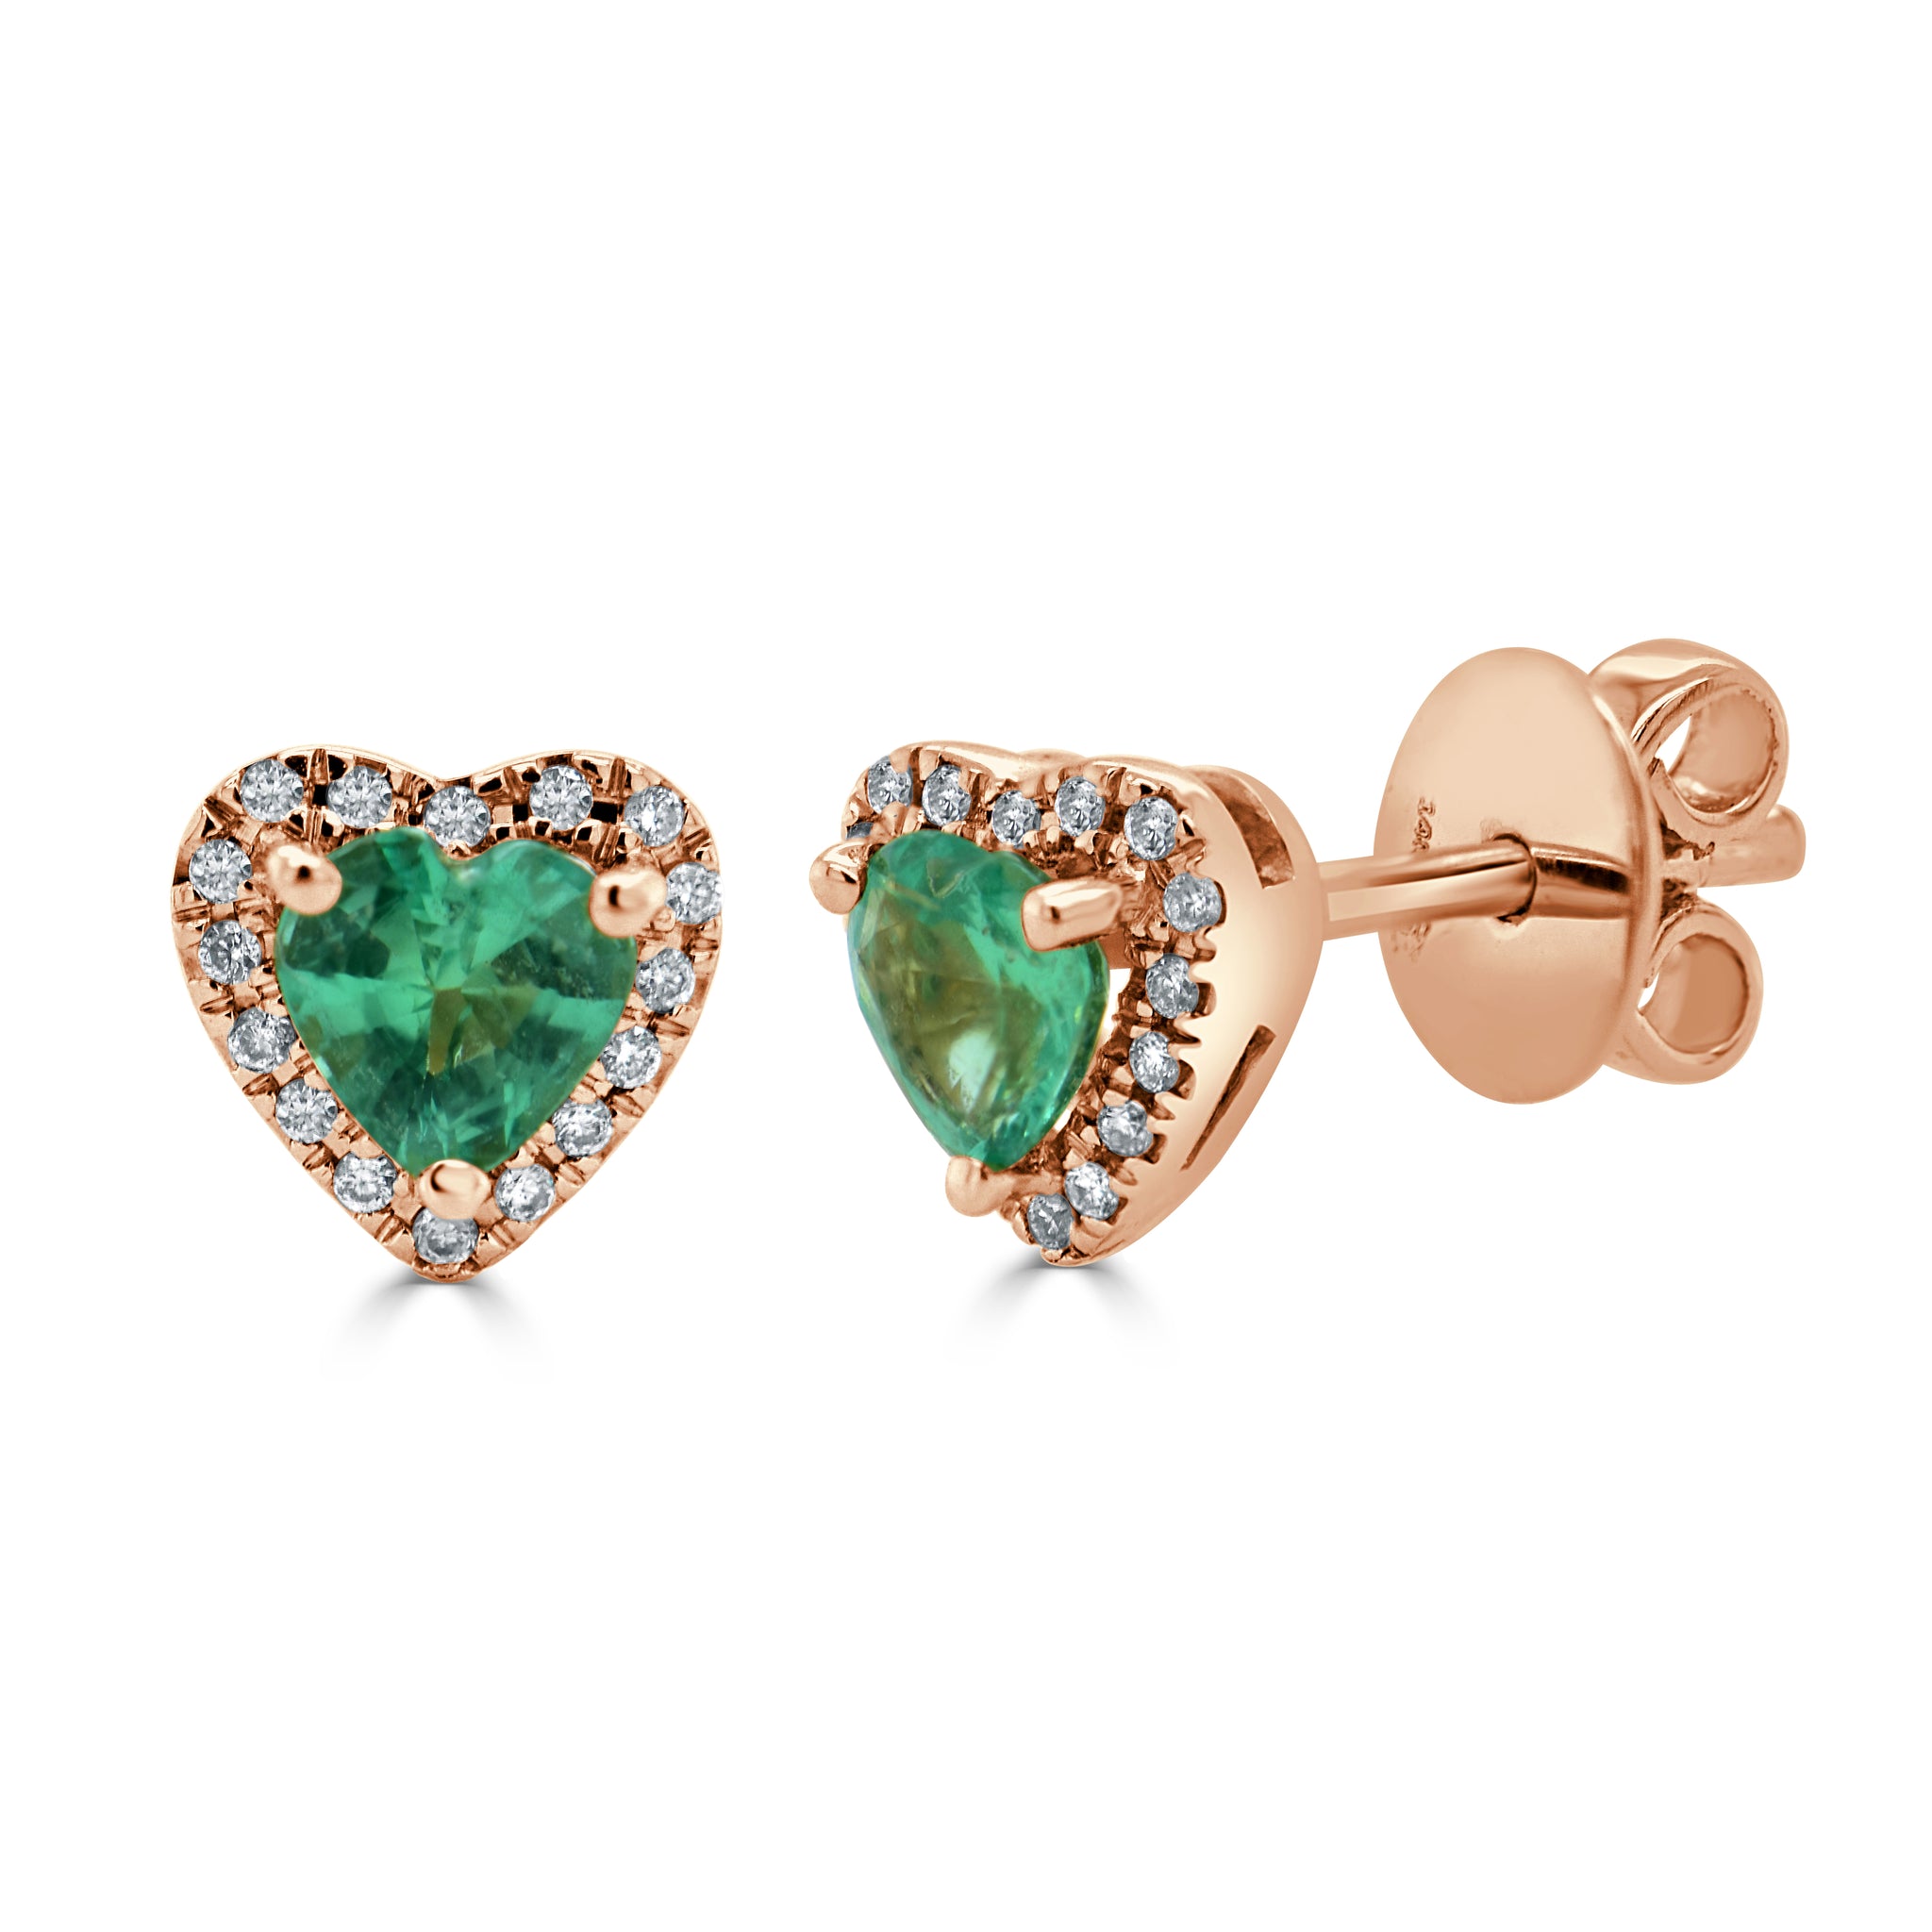 Sterling Silver Emerald Big Heart CZ Earrings